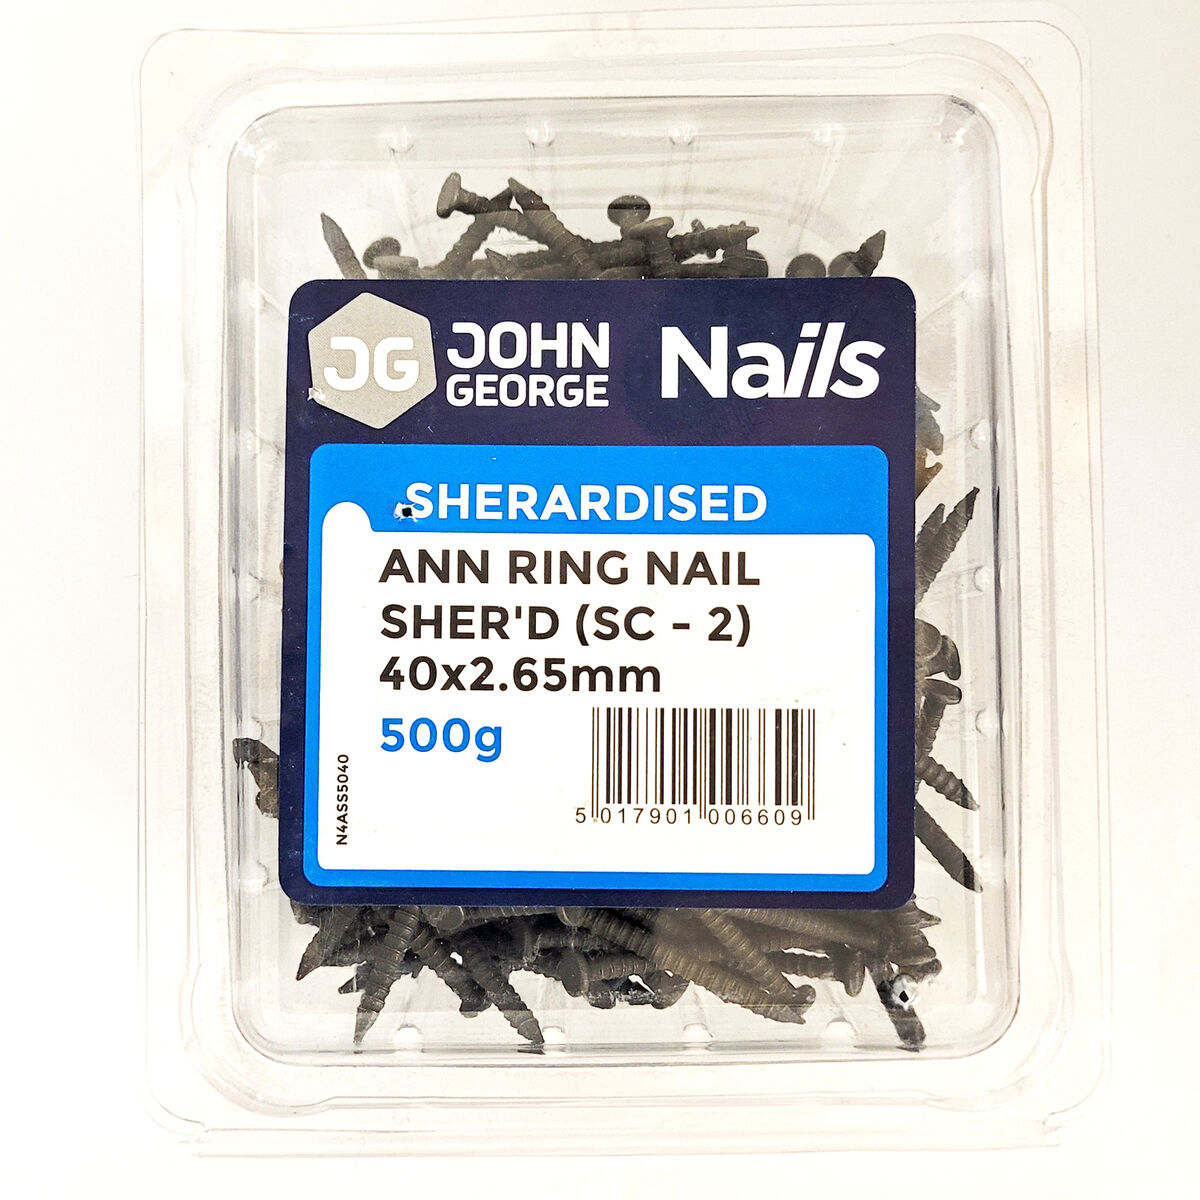 annular ringshank nails box web2.jpg